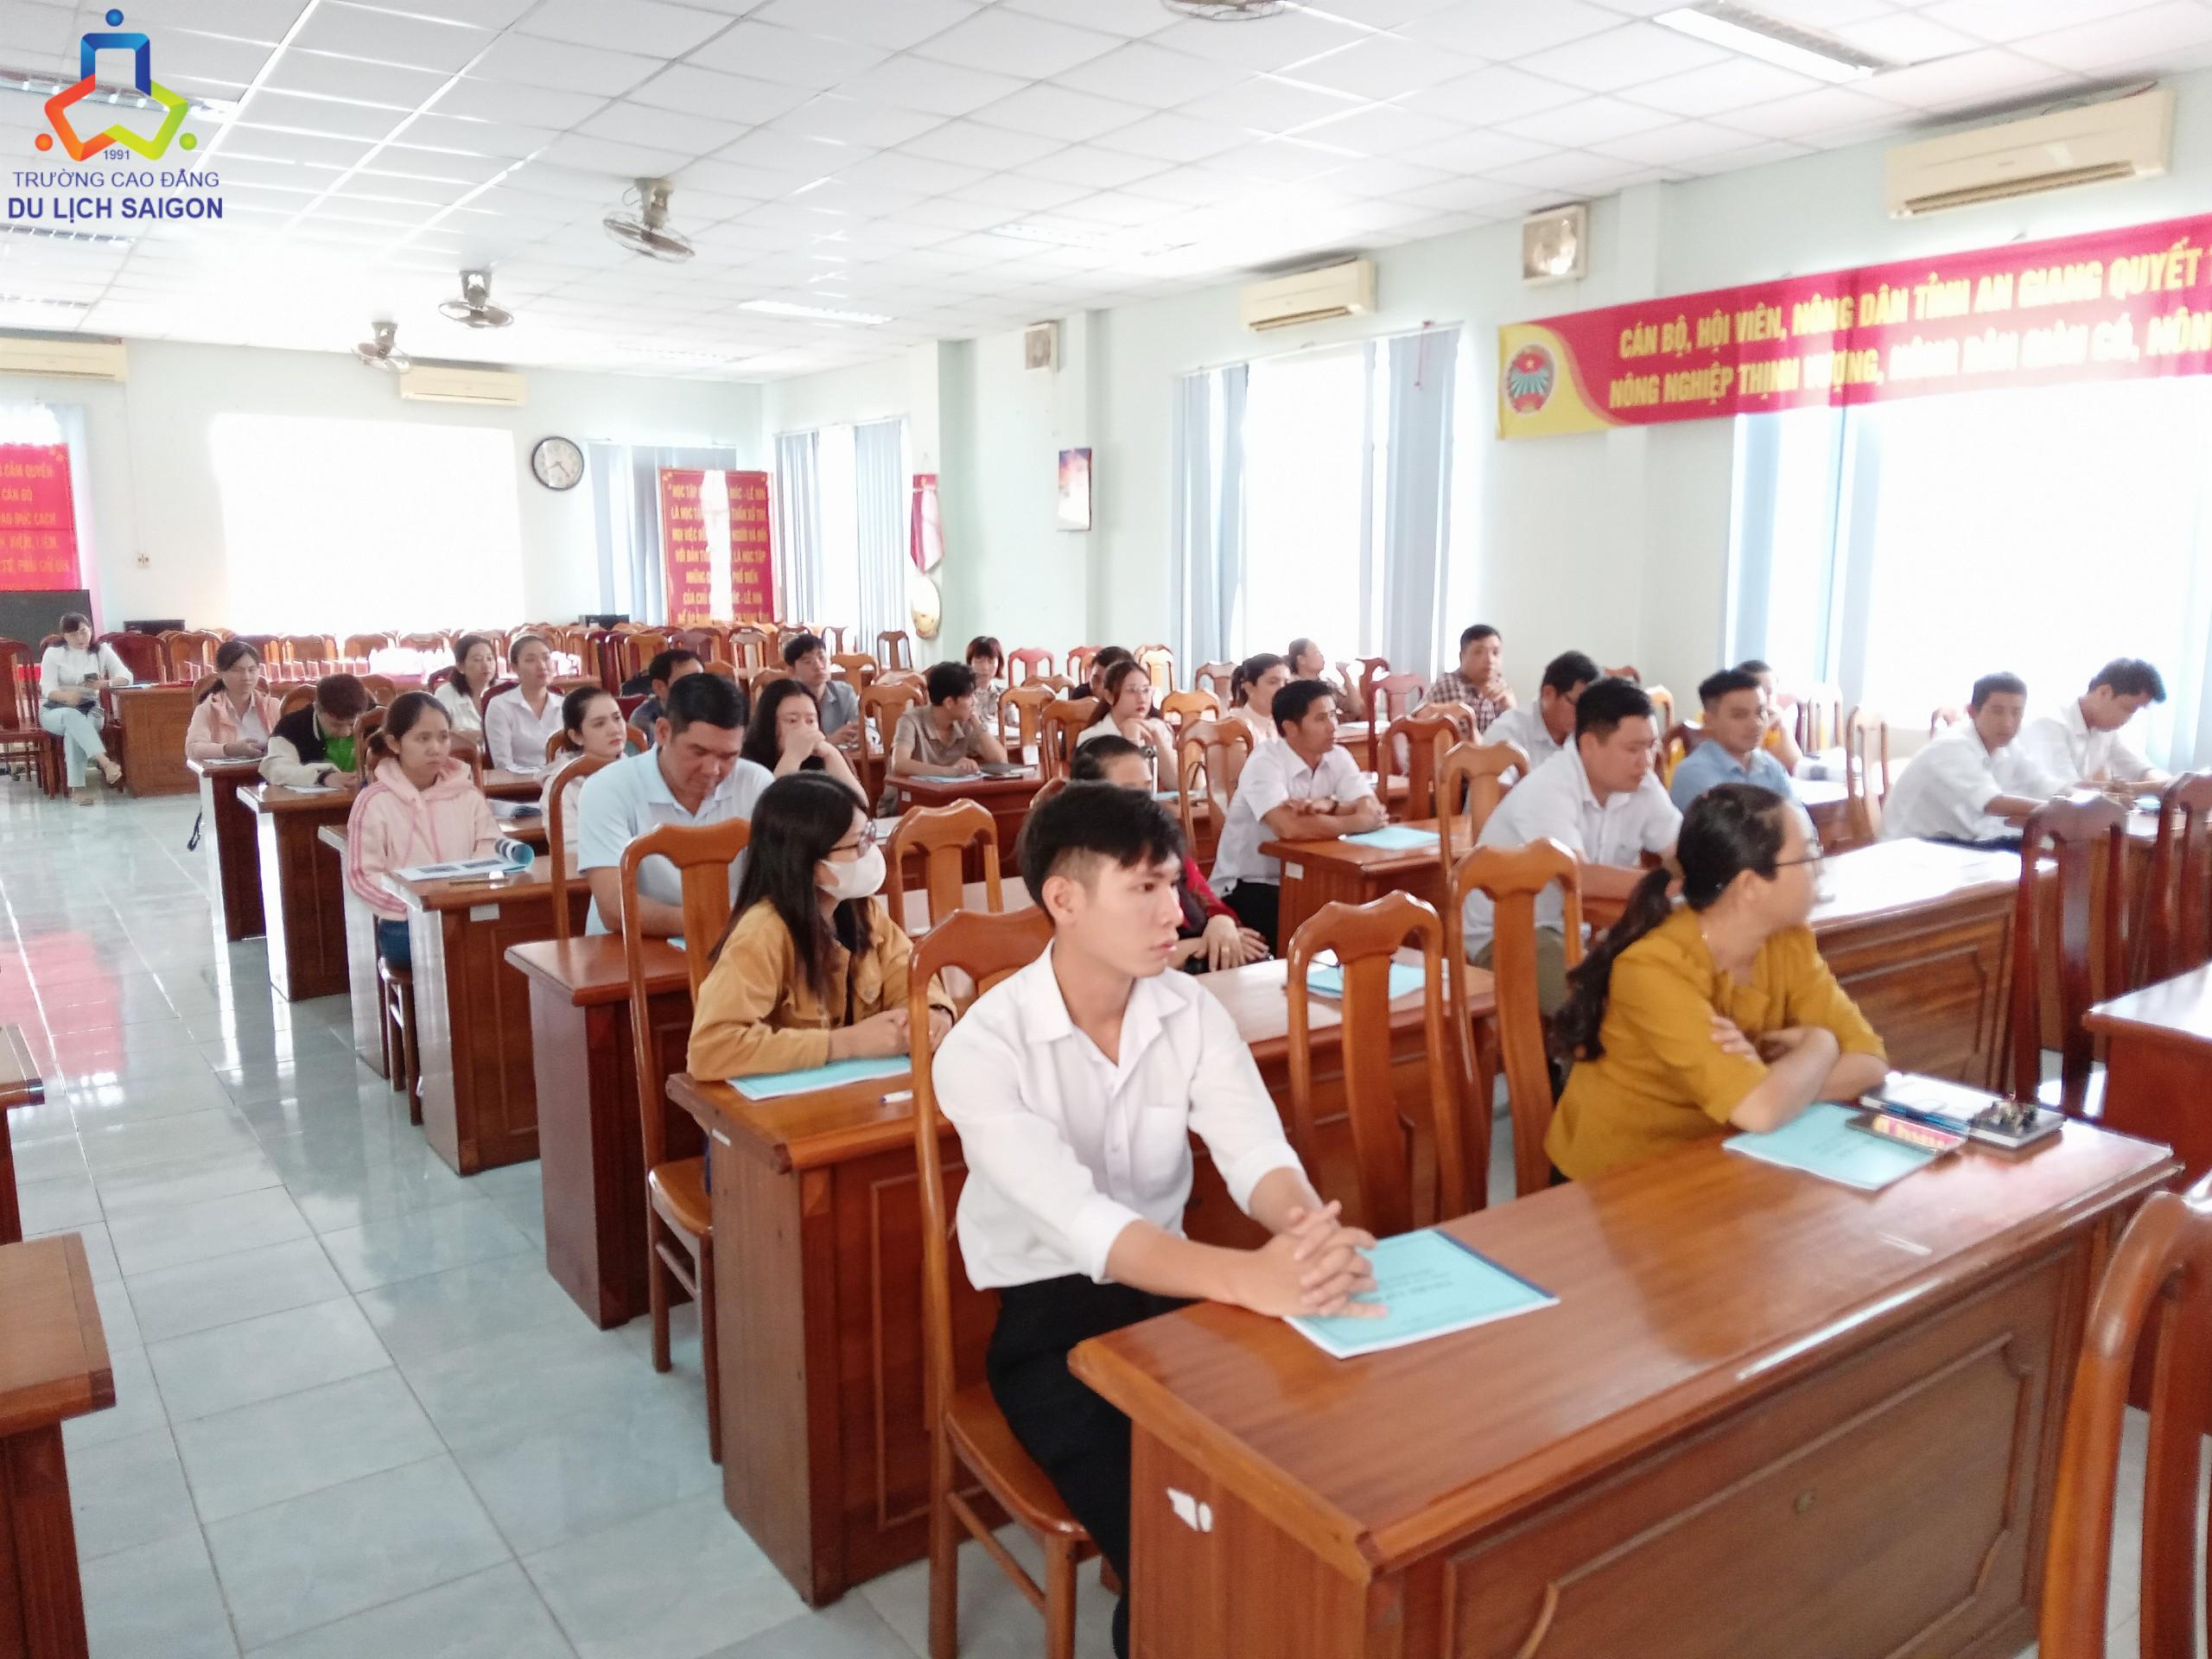 Một số hình ảnh của giảng viên Cao đẳng Du lịch Sài Gòn và học viên của Lớp Tập huấn Bảo vệ Môi trường trong hoạt động Du lịch.